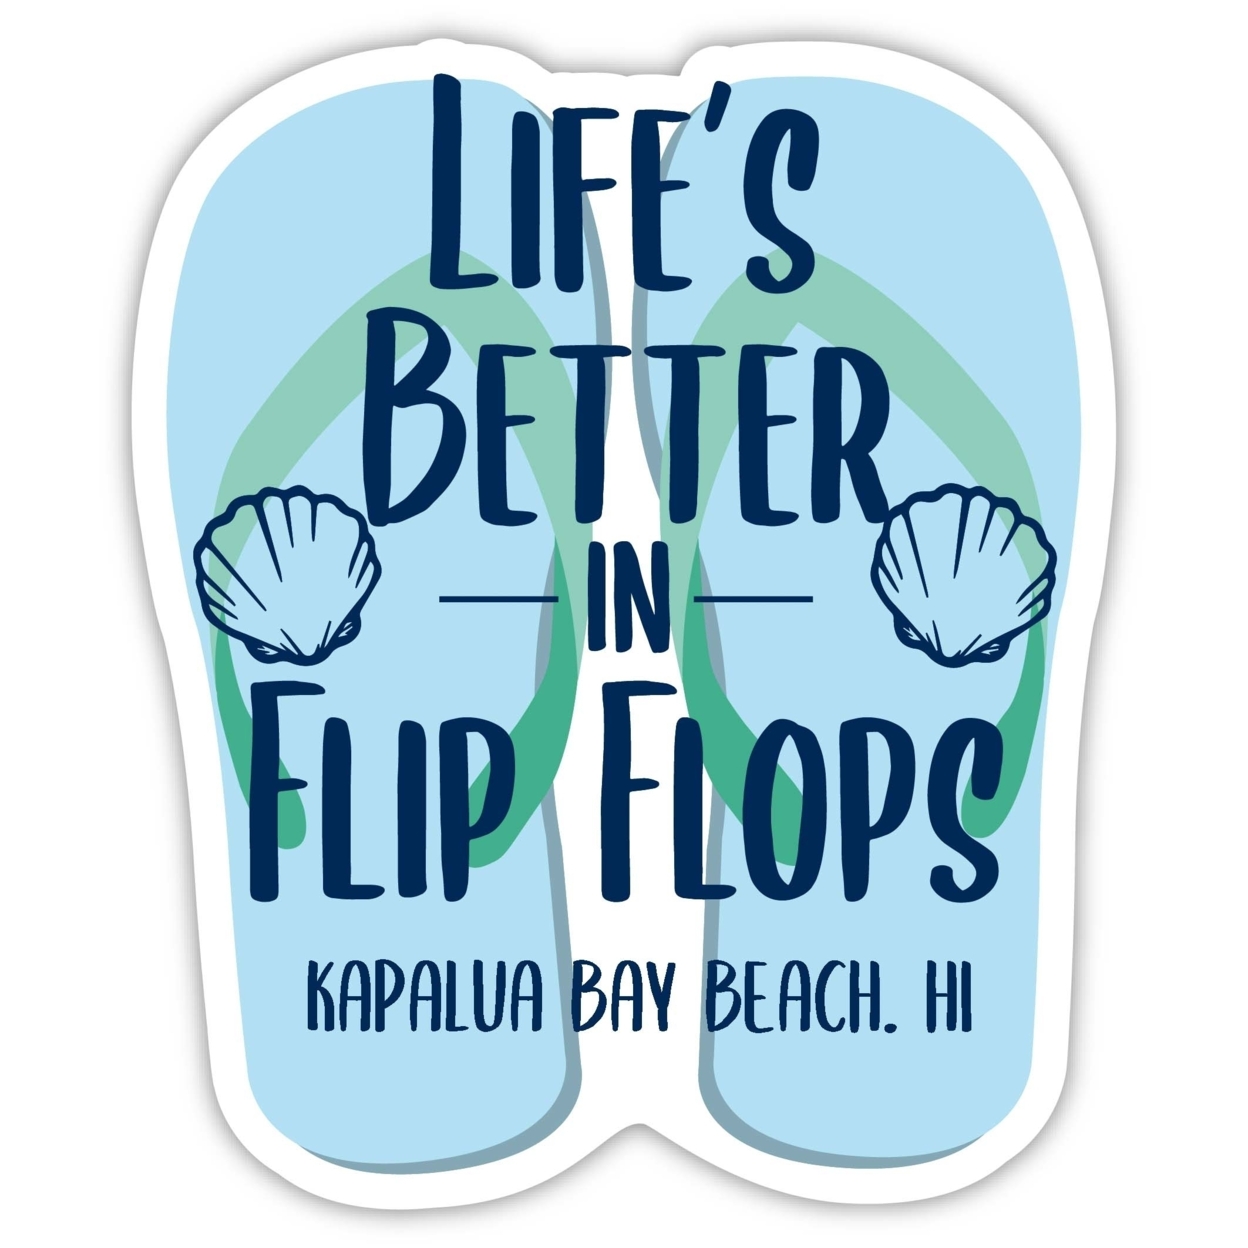 Kapalua Bay Beach Hawaii Souvenir 4 Inch Vinyl Decal Sticker Flip Flop Design